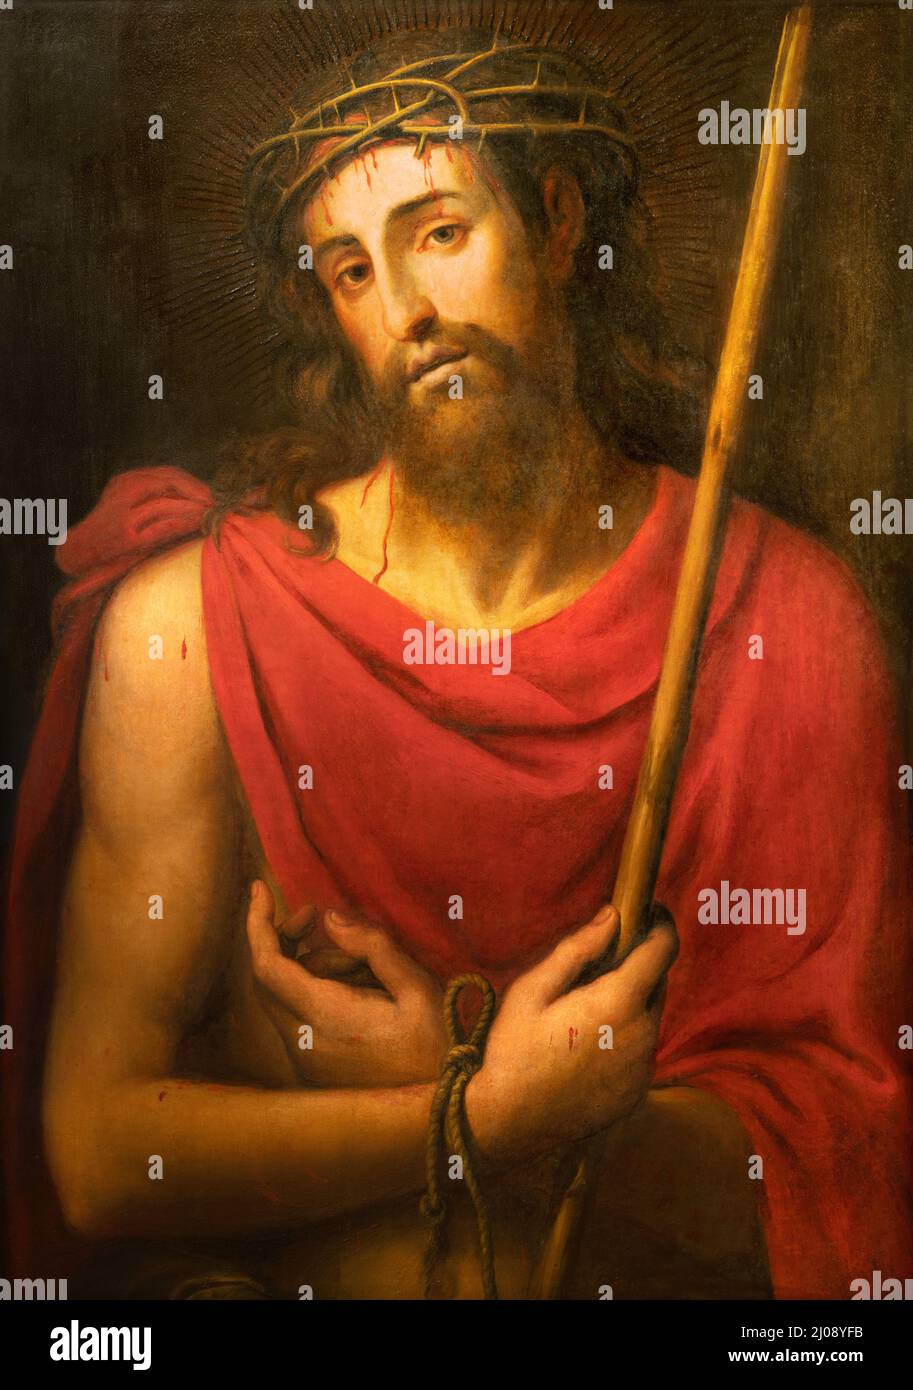 VALENCIA, SPAGNA - 14 FEBBRAIO 2022: Il dipinto ha torturato Gesù - 'Ecce Homo' nella Cattedrale - Basilica dell'Assunzione di nostra Signora Foto Stock